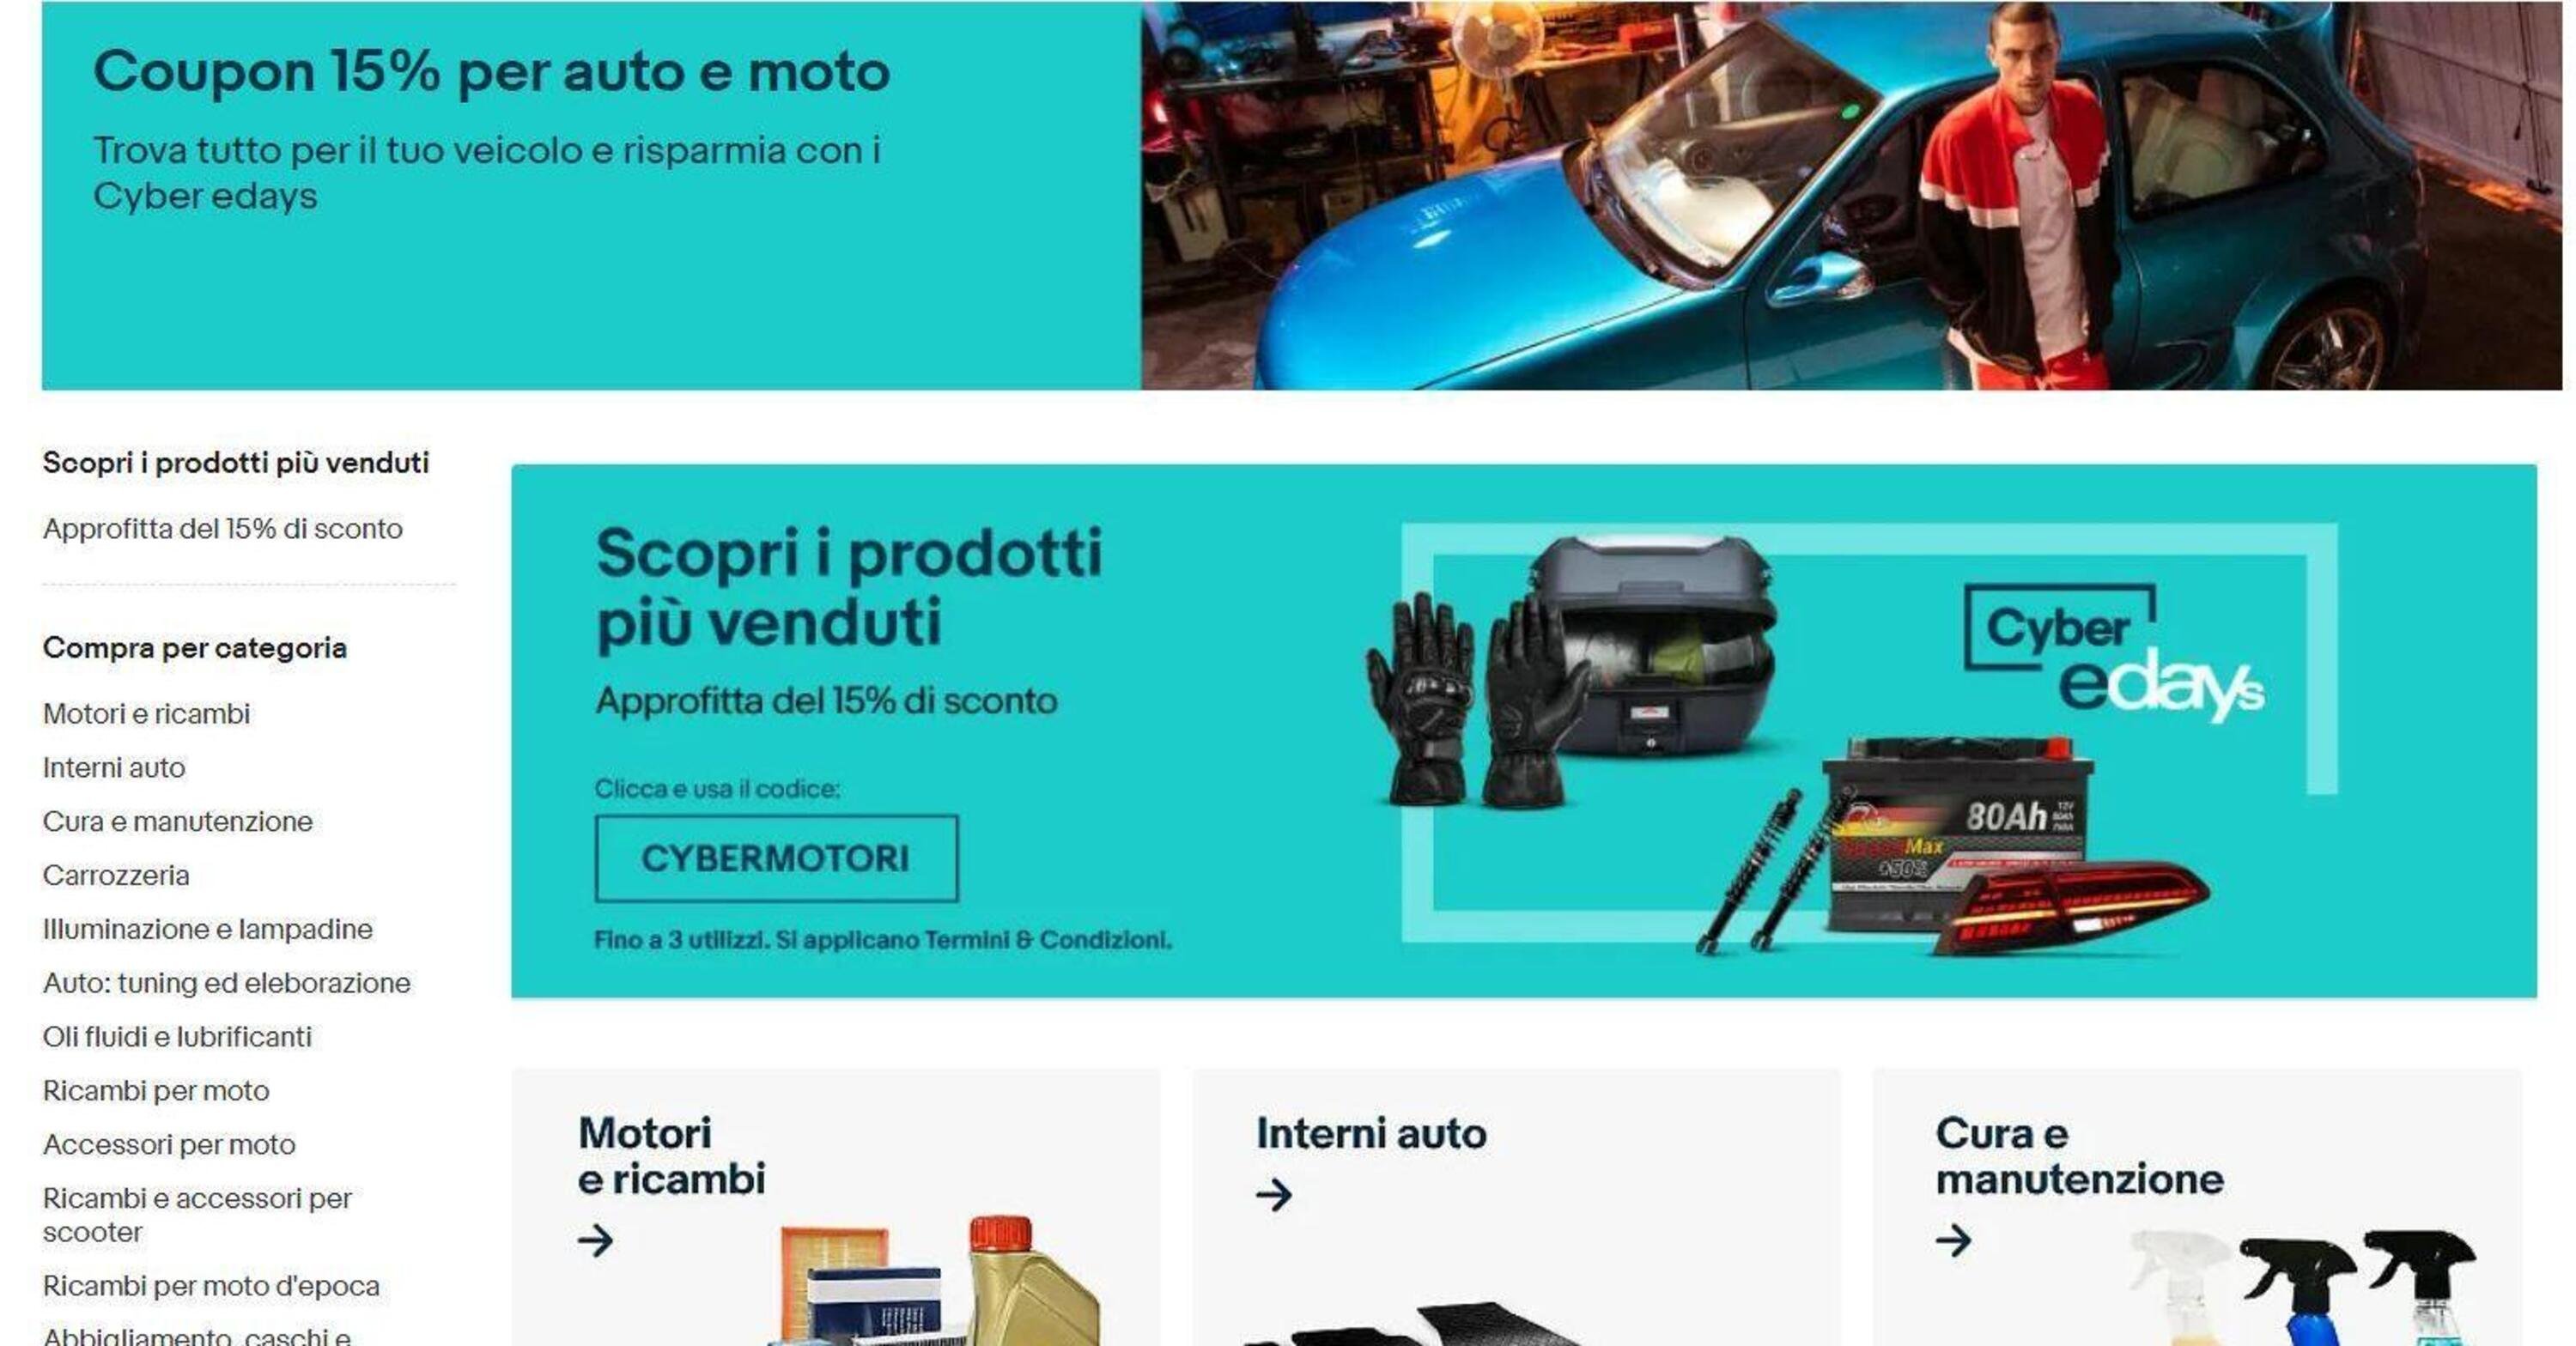 Altro che Black Friday, i Cyber edays eBay pensano ad auto e moto: sconti fino a 150 euro